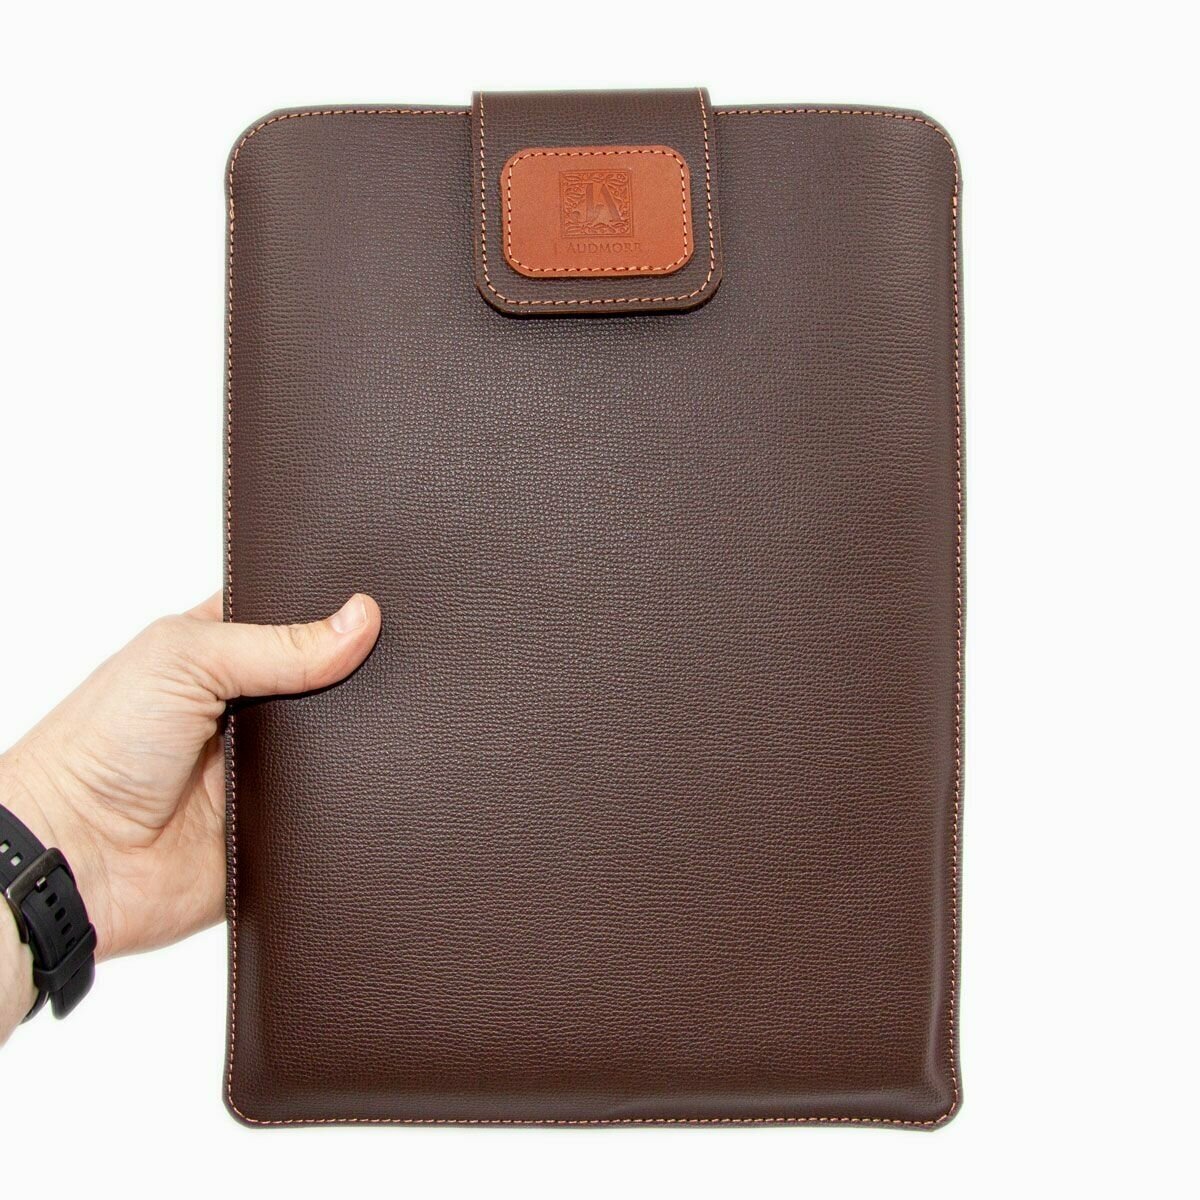 Кожаный Чехол для ноутбука 13 дюймов (Zenbook и другие ноутбуки размером до 310х210 мм), коричневый, J. Audmorr - Weybridge 13 Muscat